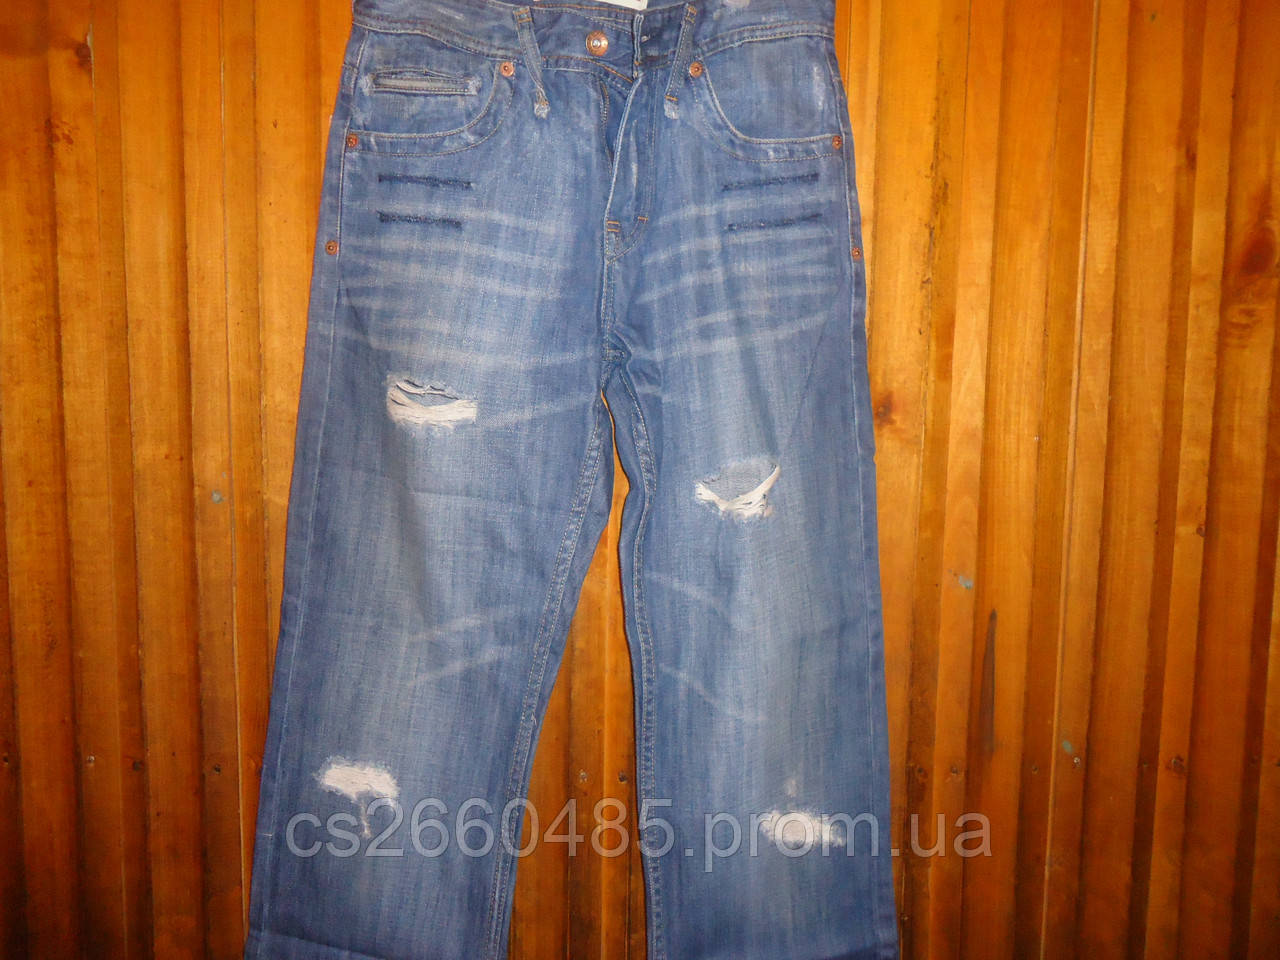 Чоловічі джинси (рванка ) w 30 L34